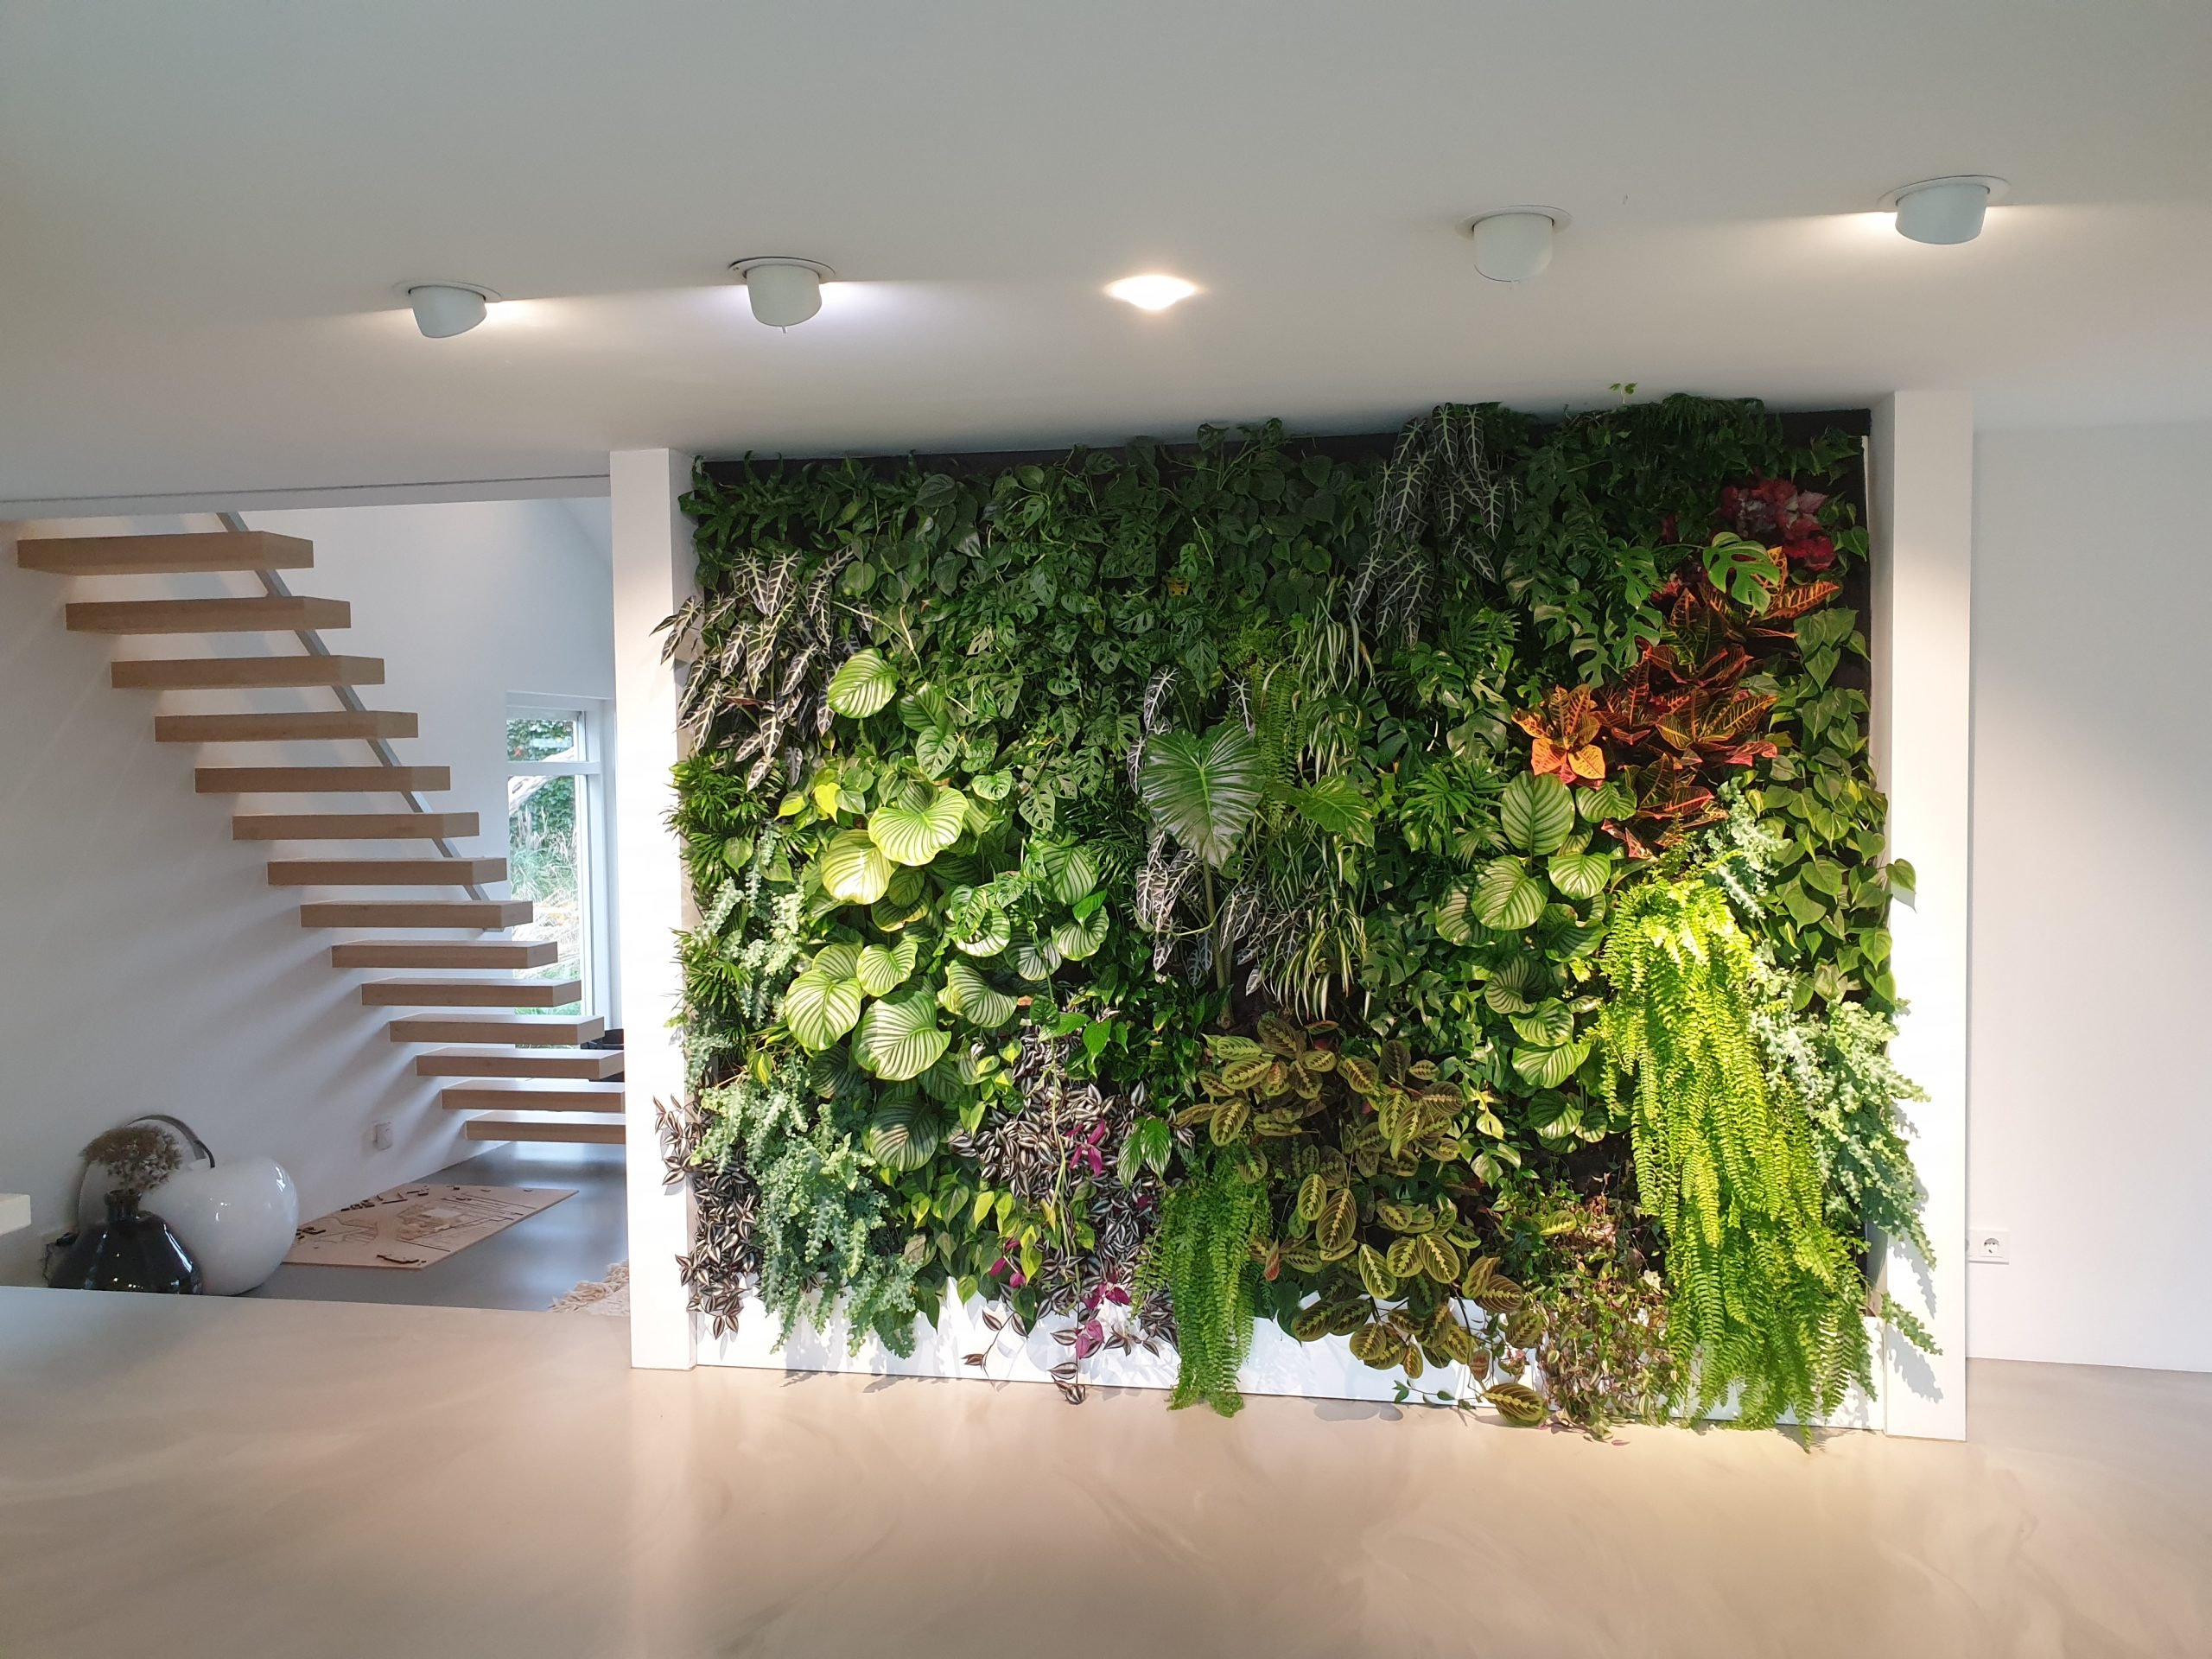 Ter ere van Mooie jurk Kennis maken Deze levende plantenwand zorgt voor een prachtige groene keuken! - Vertical  Gardens